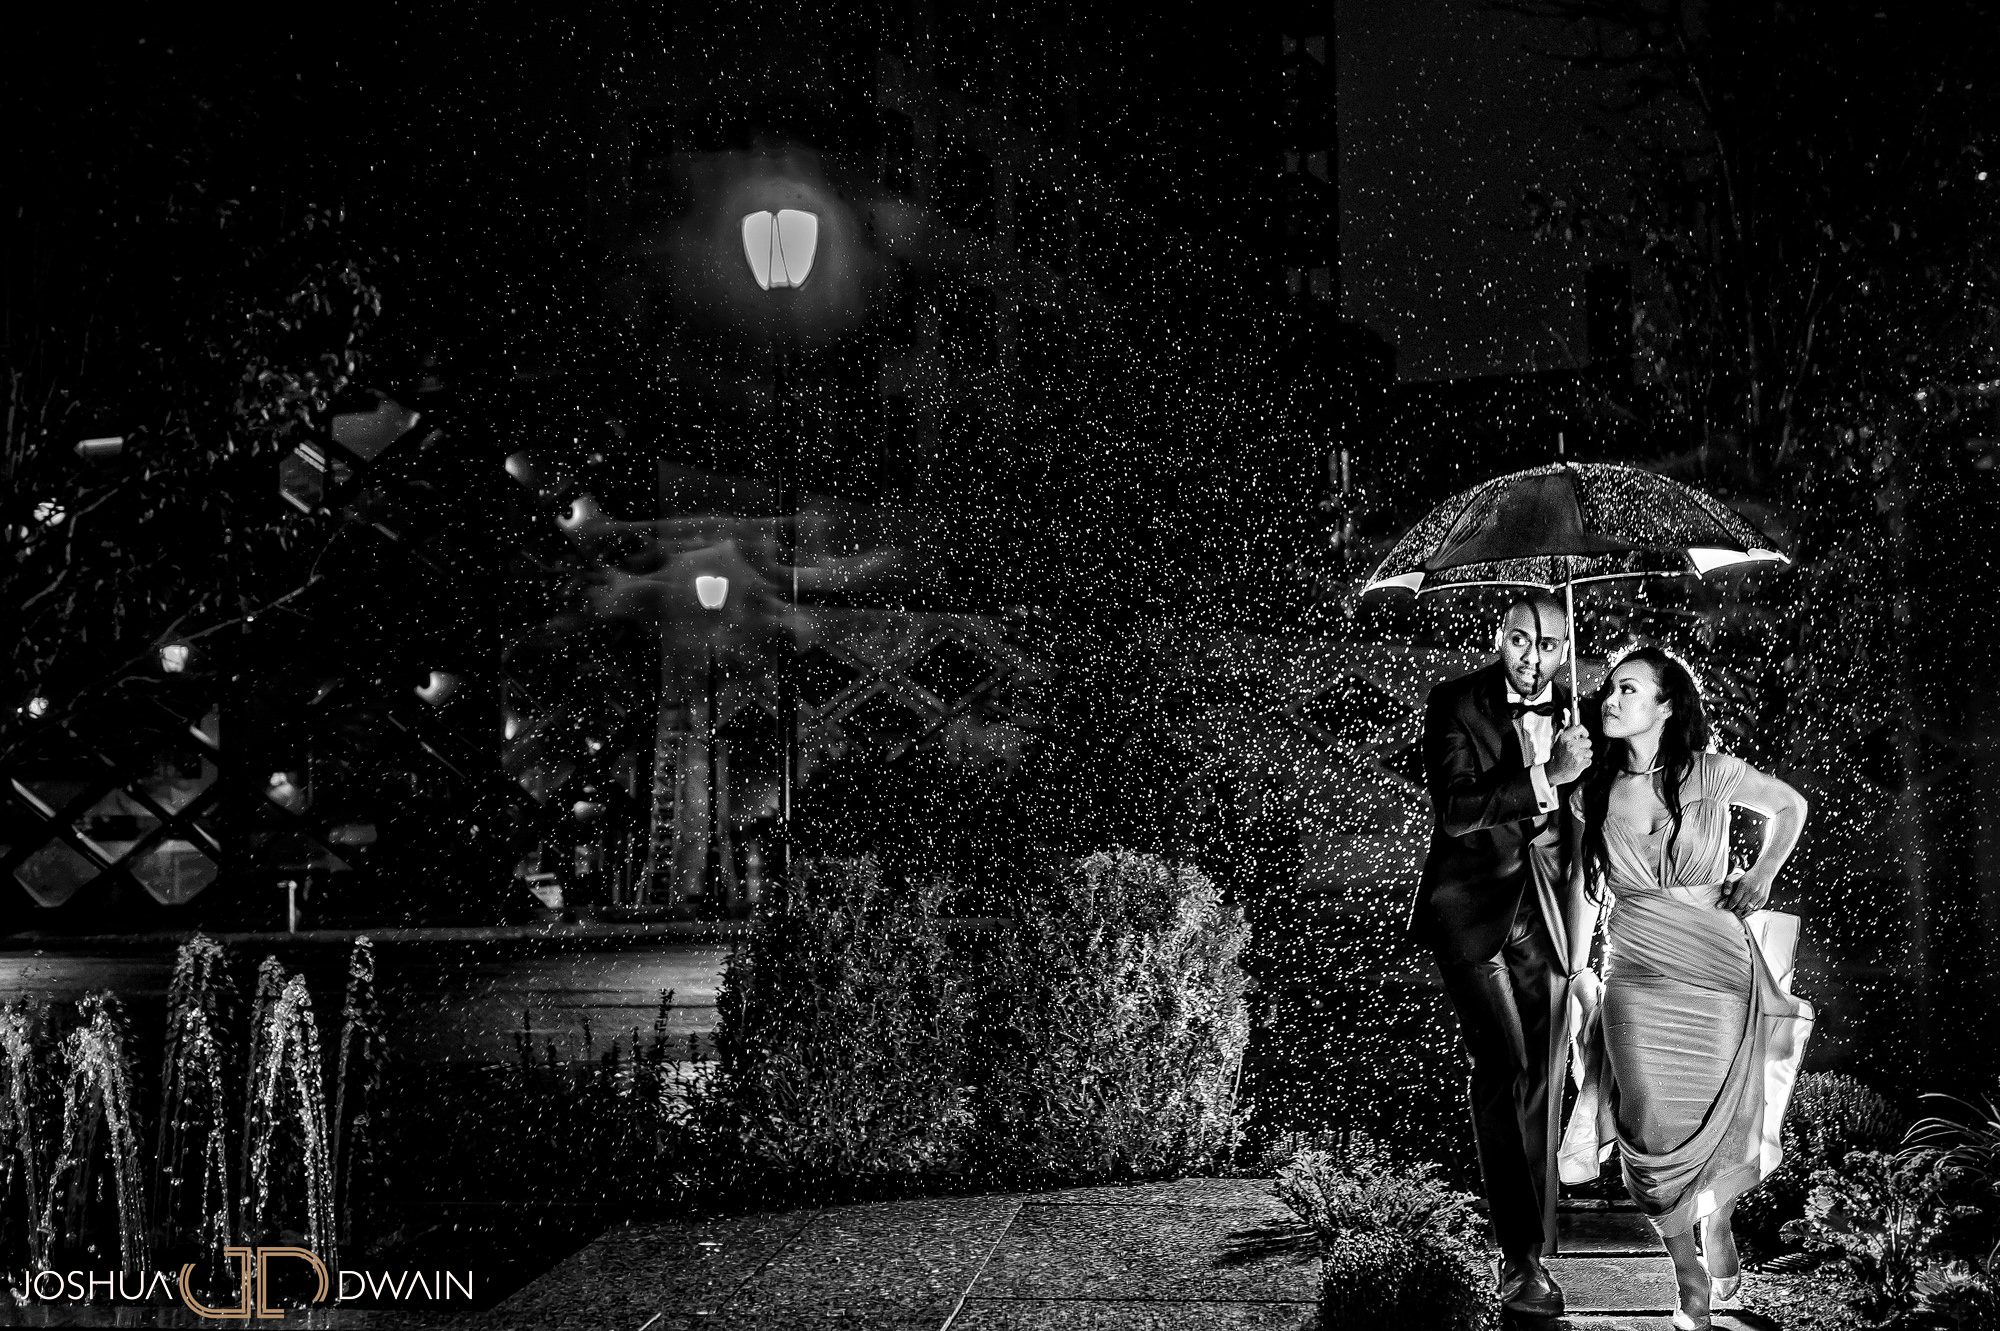 Sharon & Edward's Wedding at the Ritz Carlton in White Plains, New York